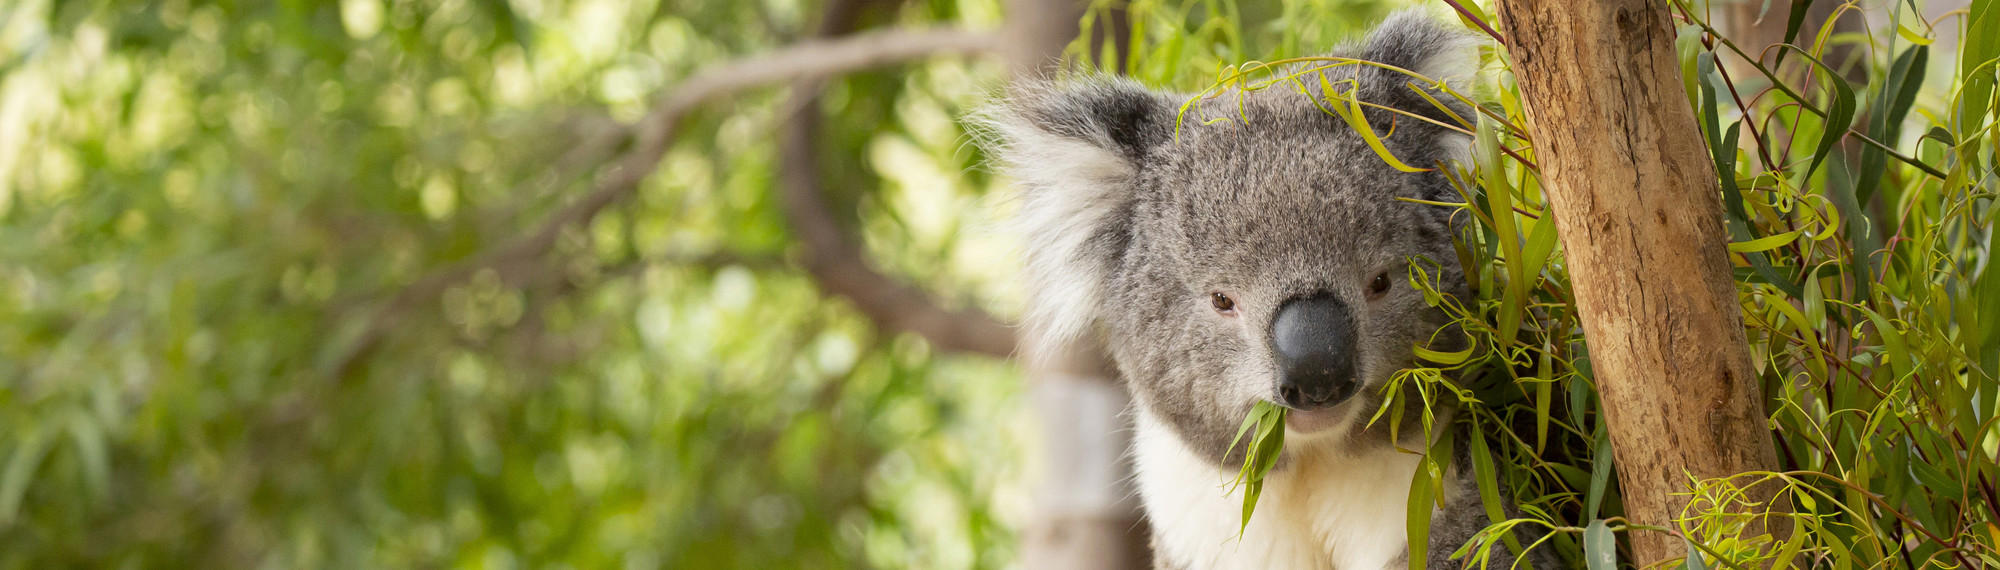 Koala Enjoying Leaves Sitting in a Tree